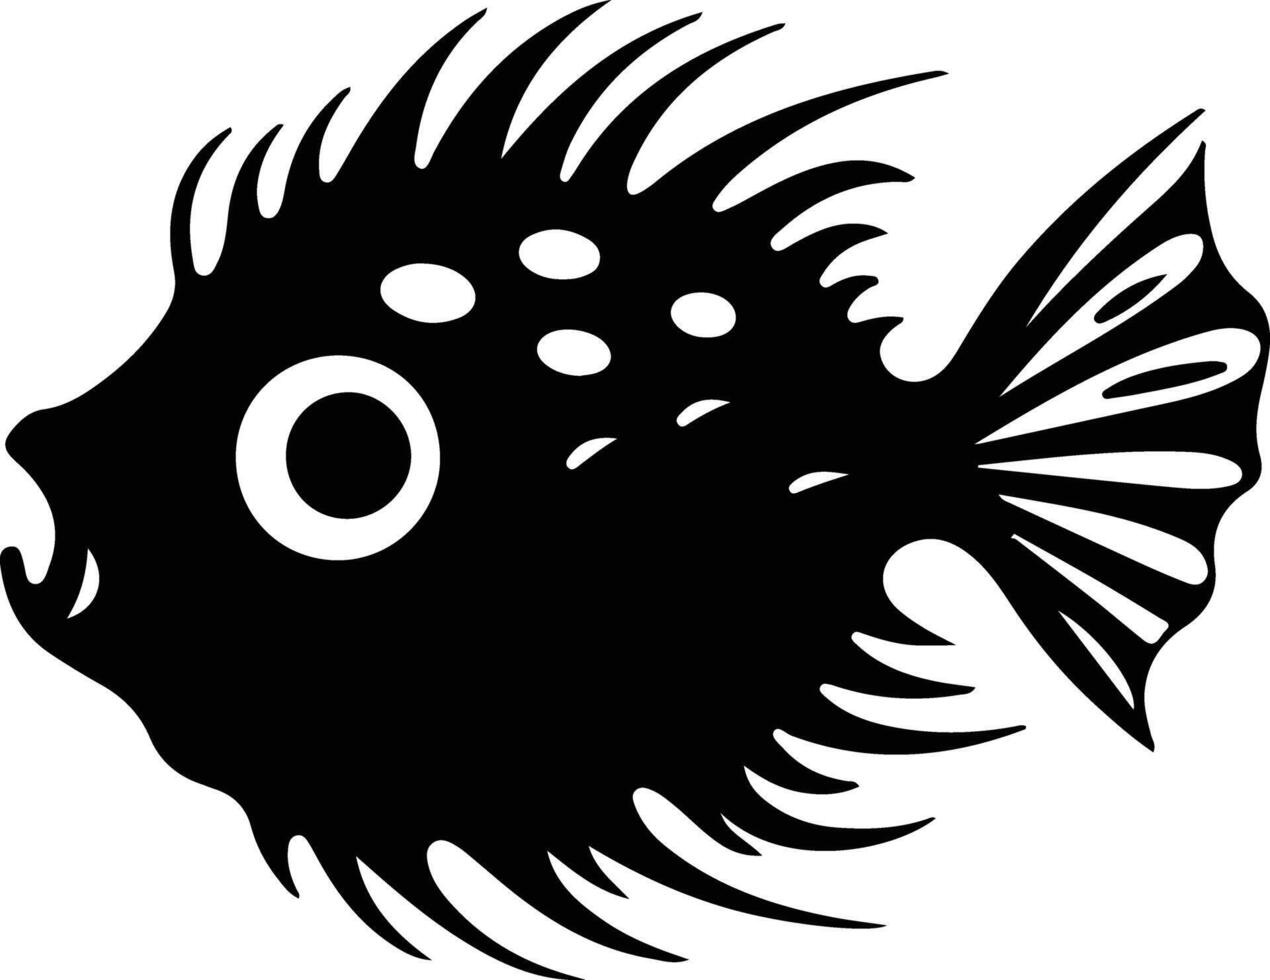 Blowfish noir silhouette vecteur